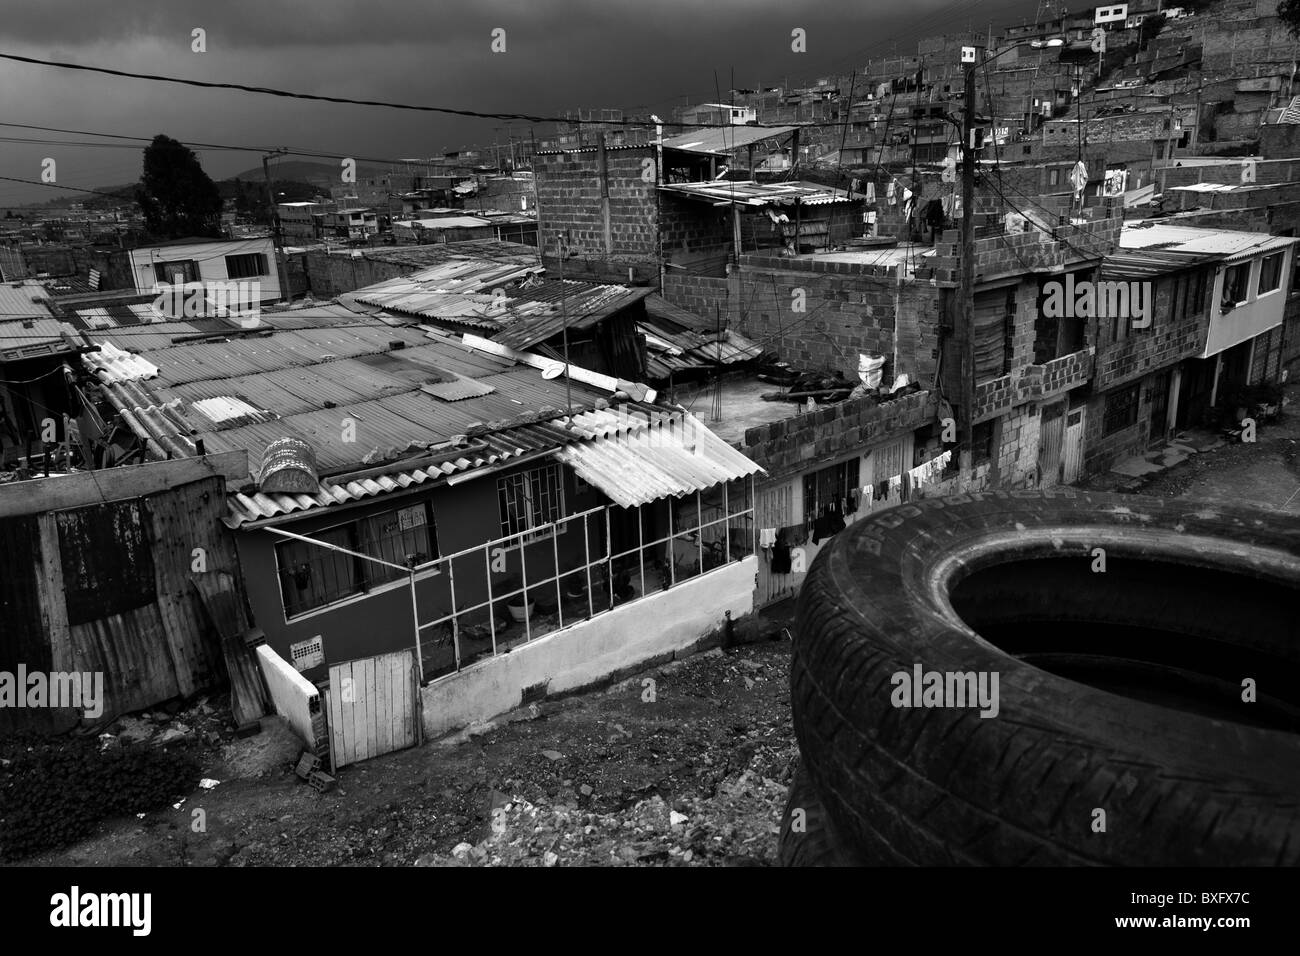 Ciudad Bolívar, ein Elendsviertel im Süden von Bogotá, wo vertriebene Menschen aus allen Teilen des Landes leben, Kolumbien Stockfoto